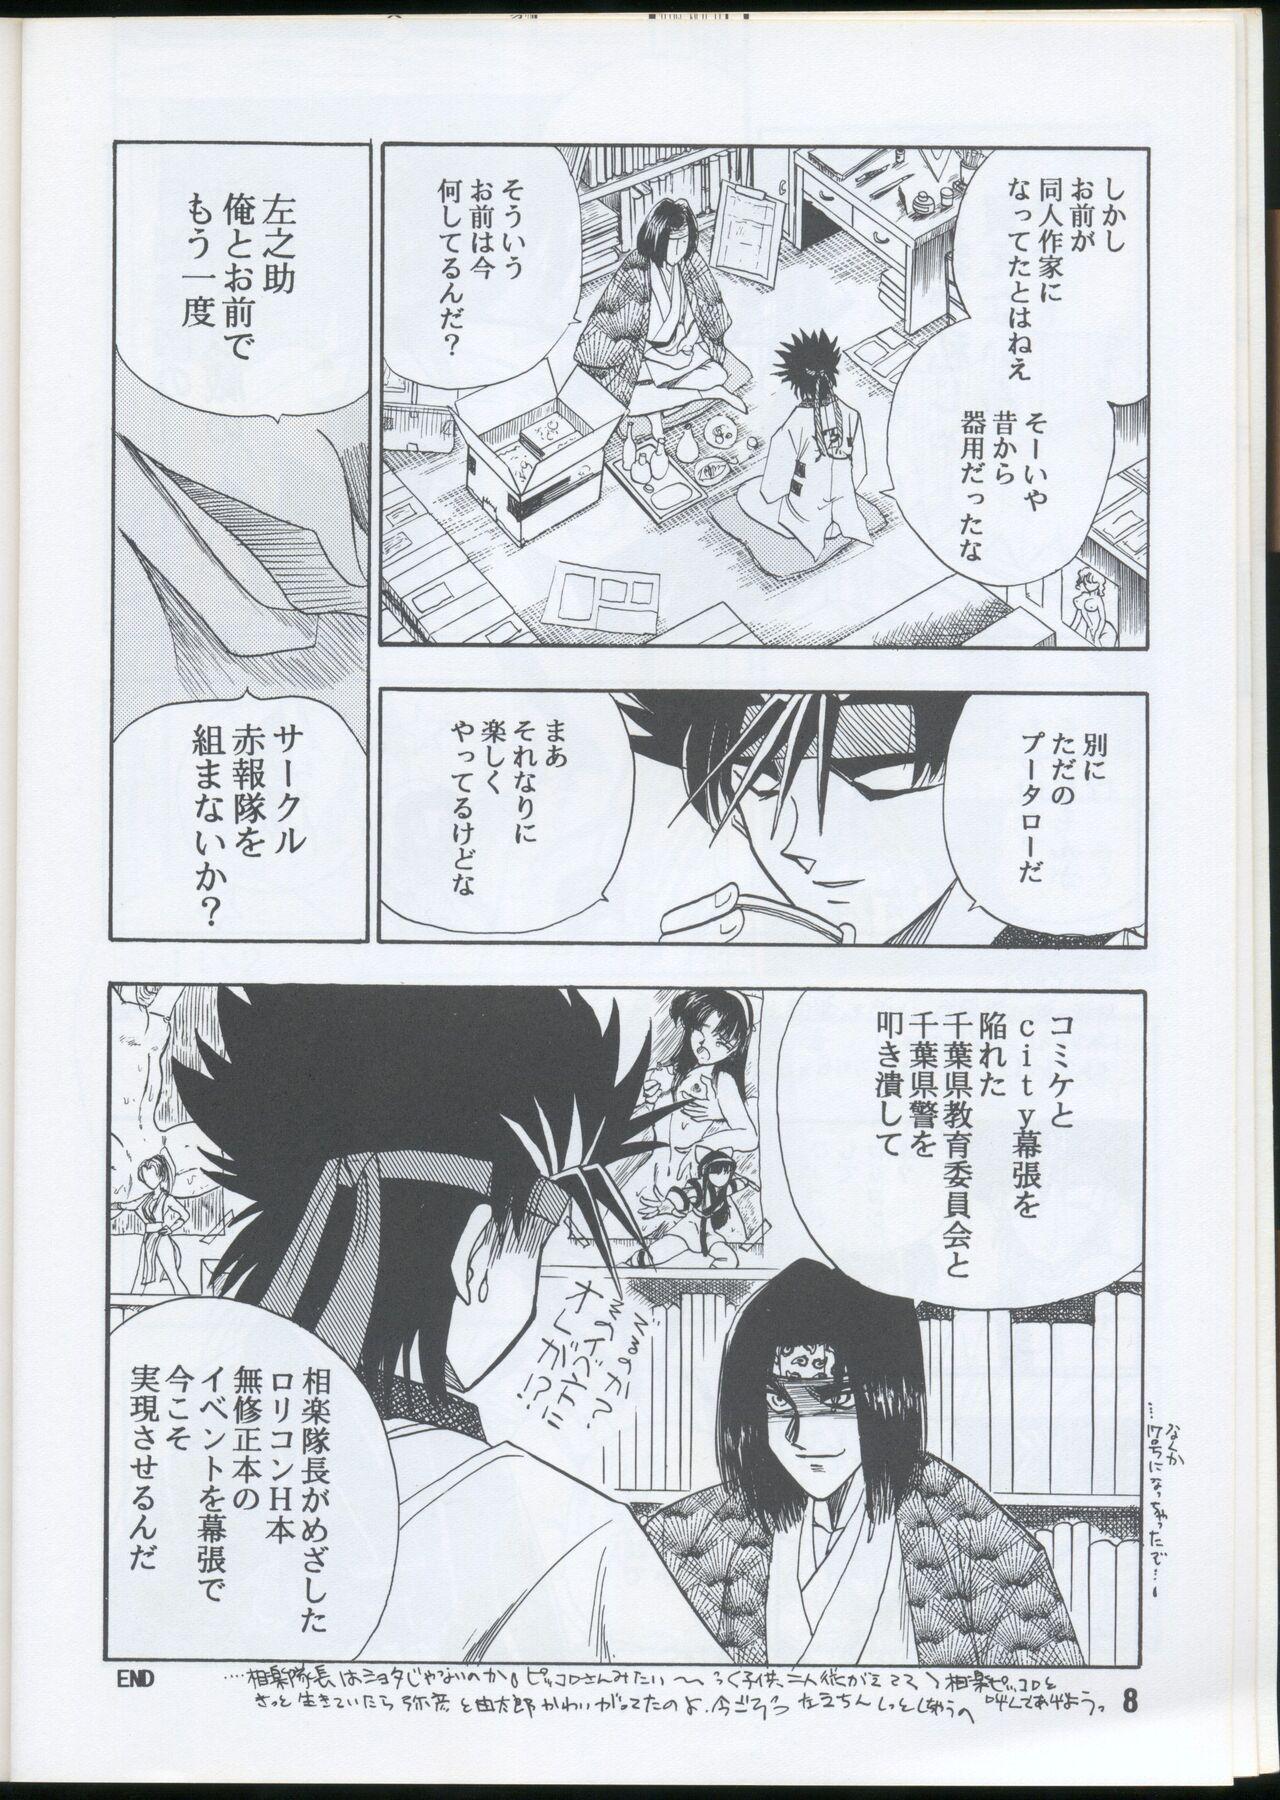 Money Rurouni Kenshin Oro! 2 - Rurouni kenshin | samurai x Flaquita - Page 8